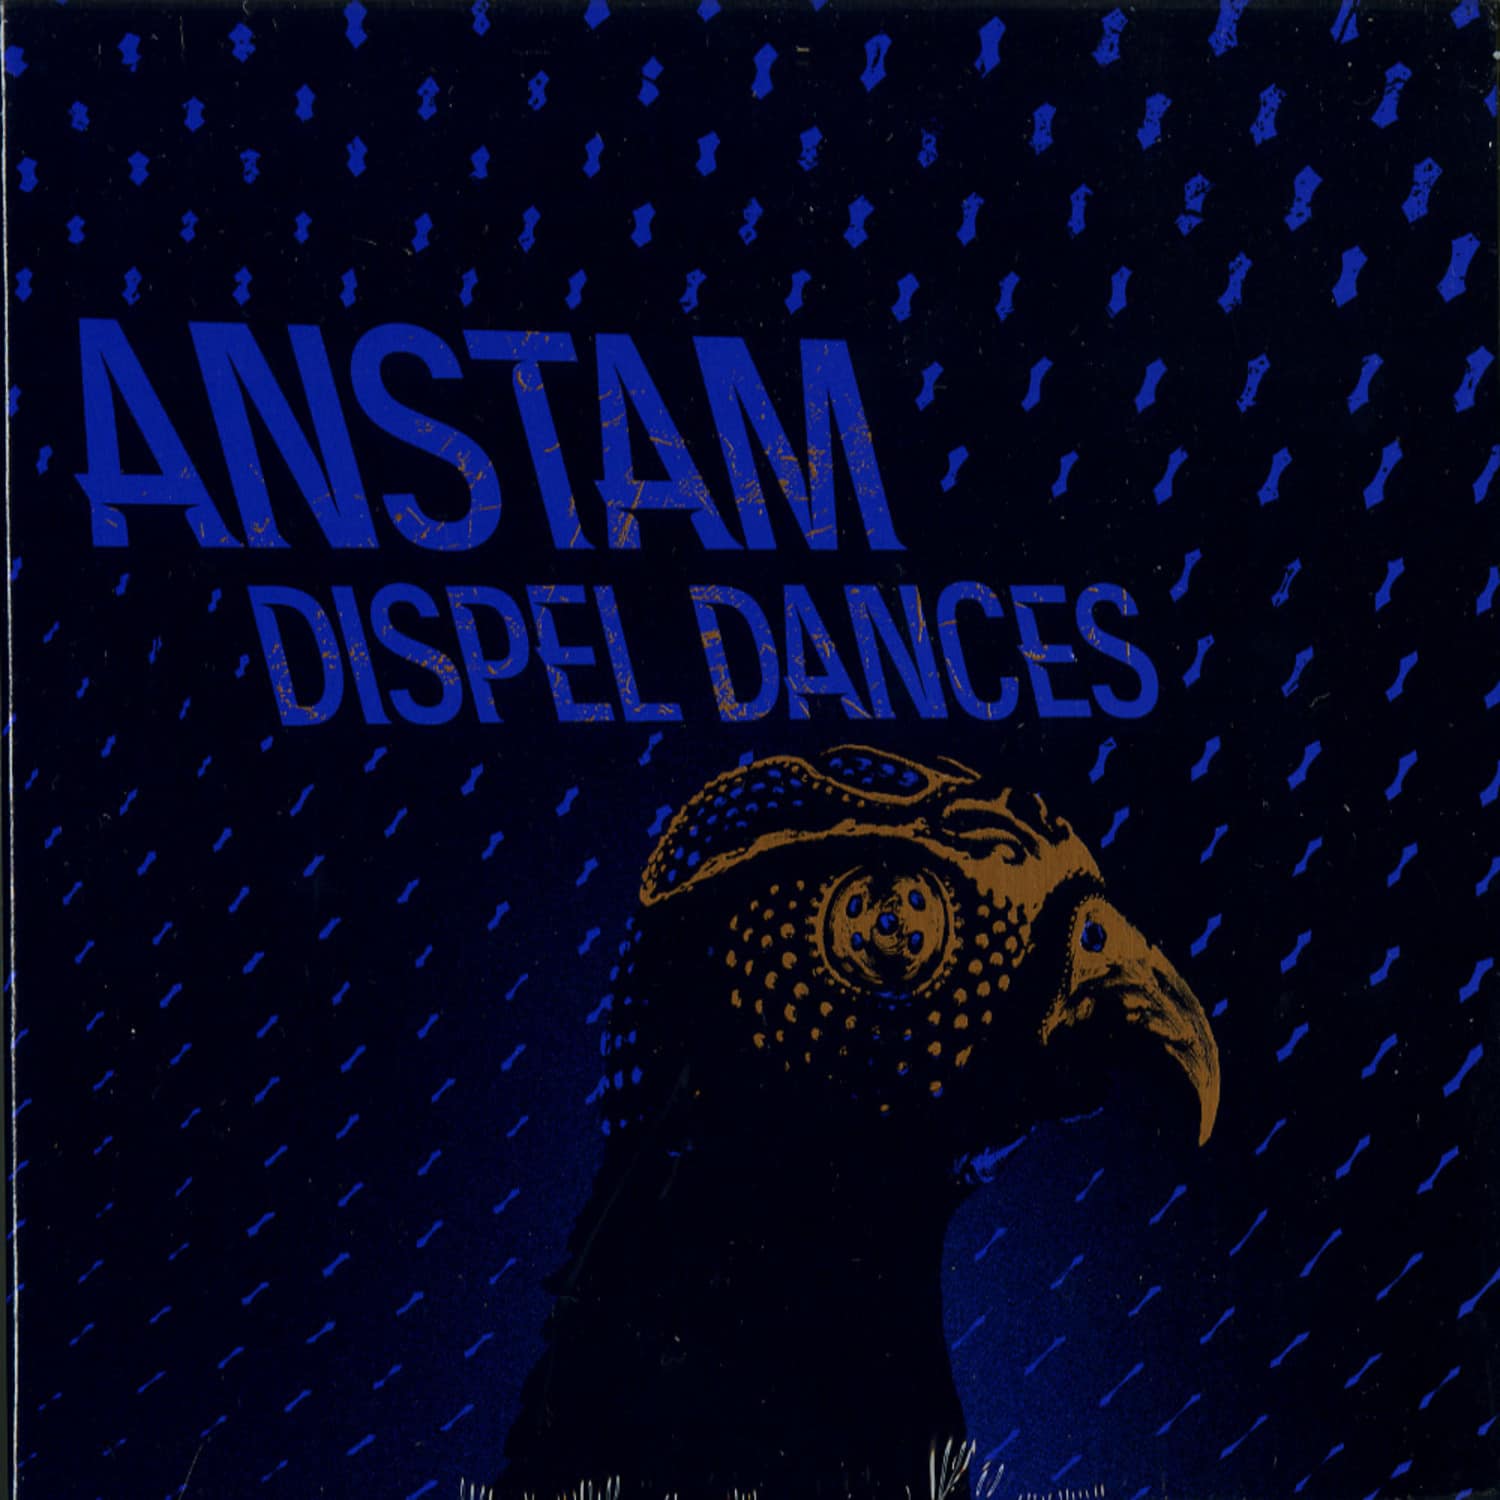 Anstam - DISPEL DANCES 